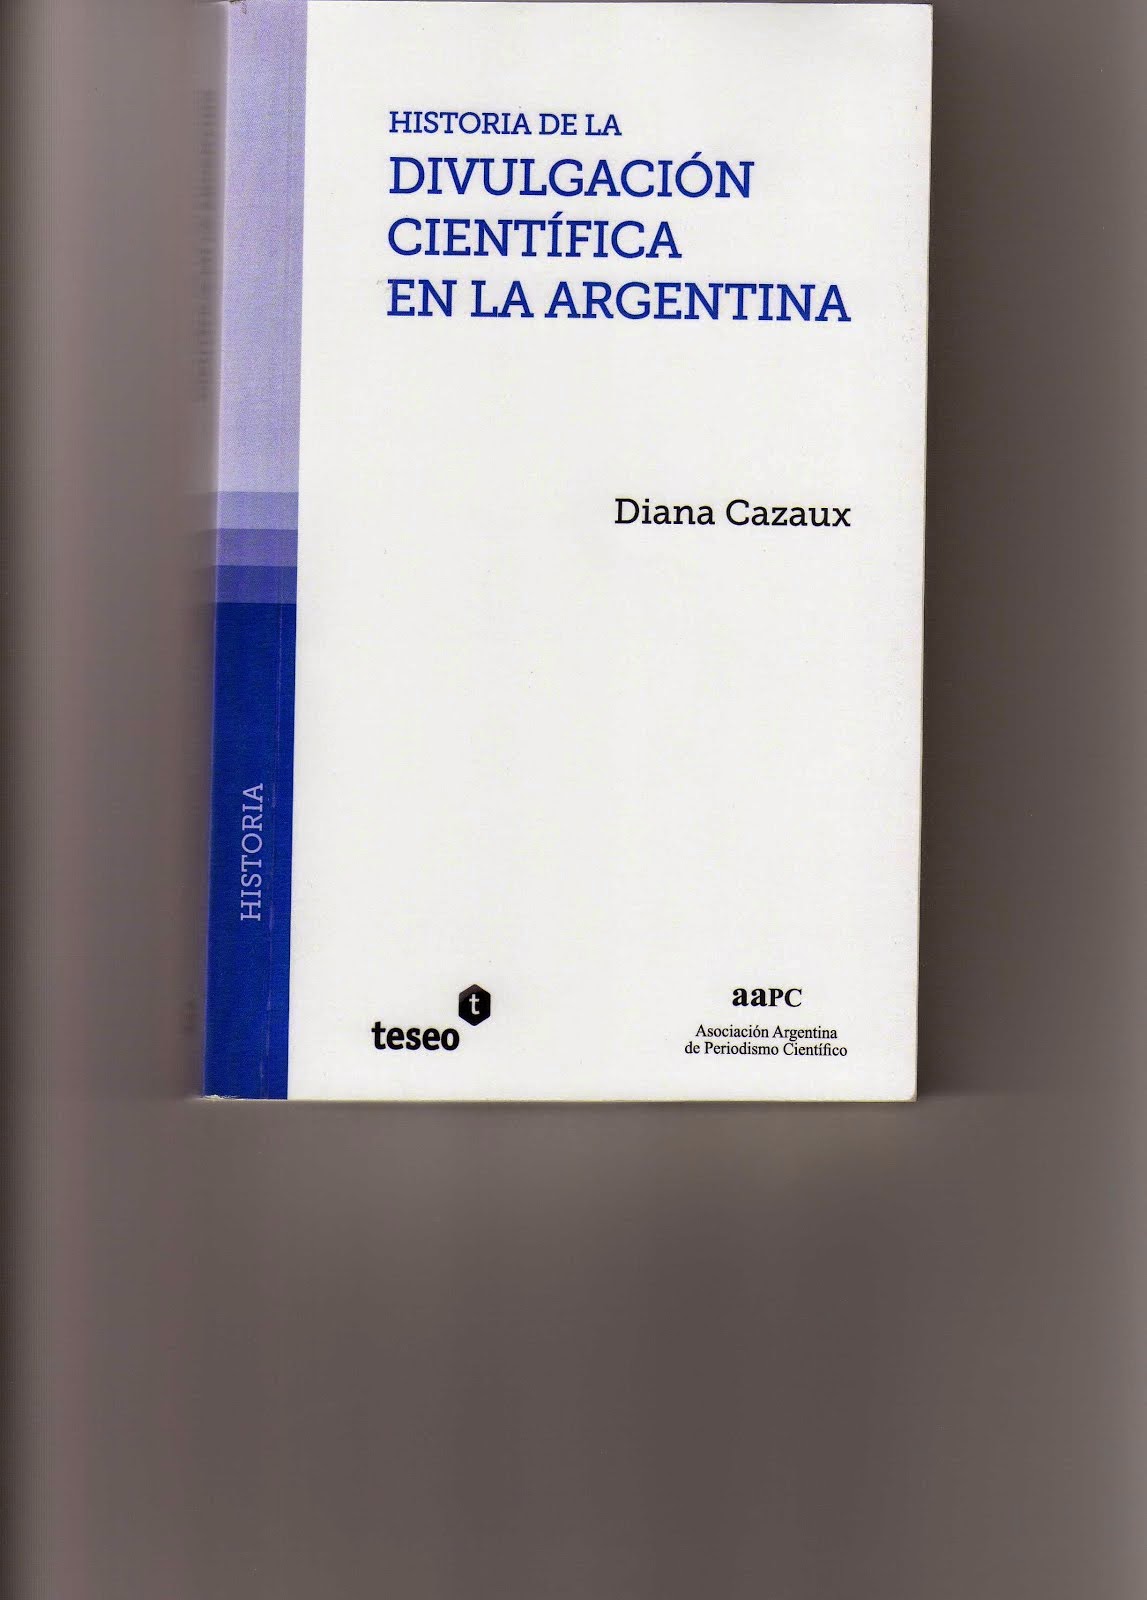 Historia de la divulgación científica en la Argentina